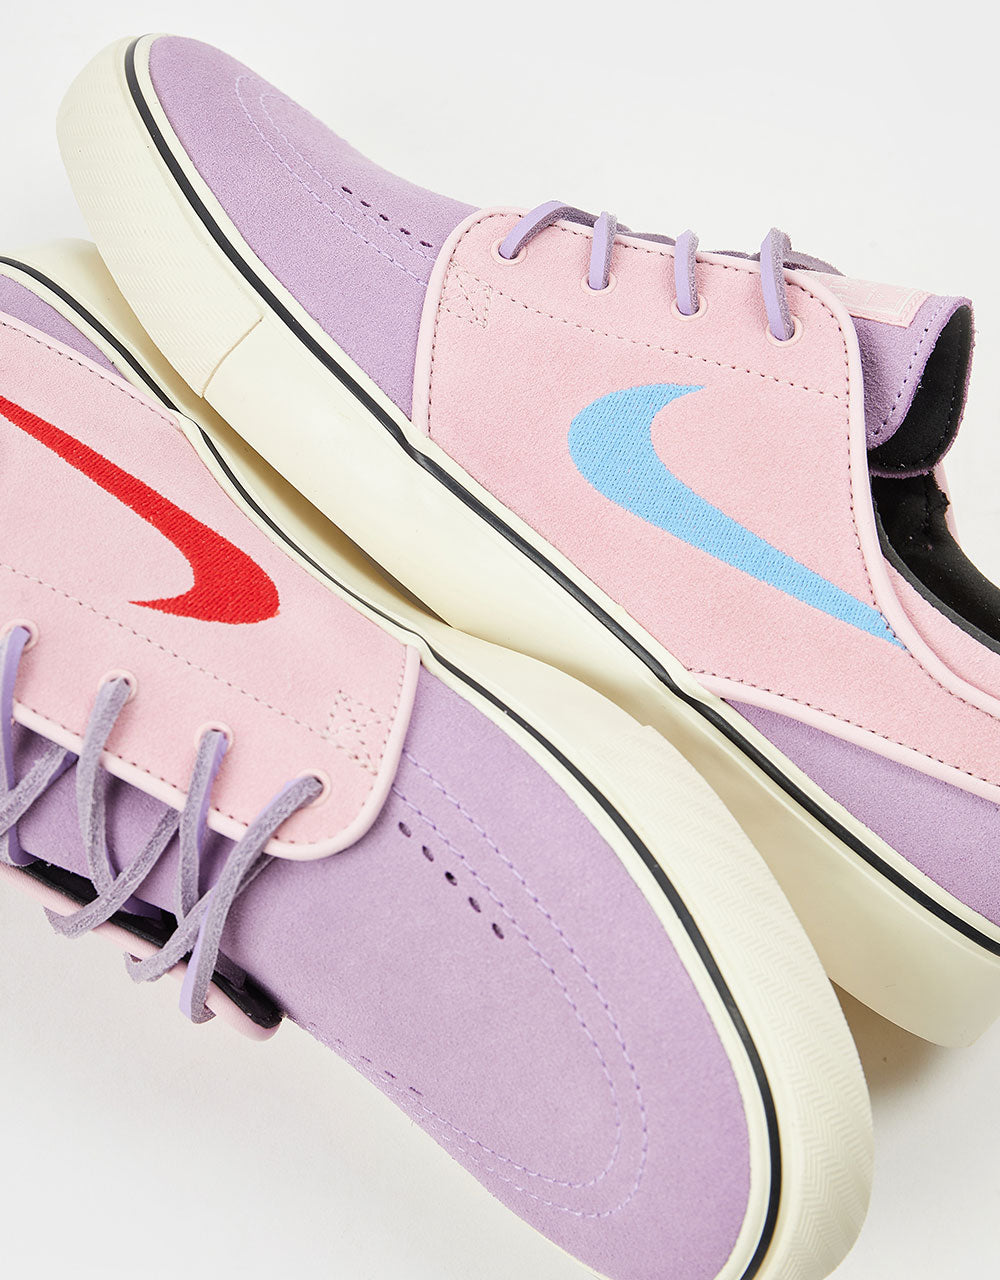 Nike SB Zoom Janoski OG+ Skate Shoes - Lilac/Noise Aqua-Med Soft Pink